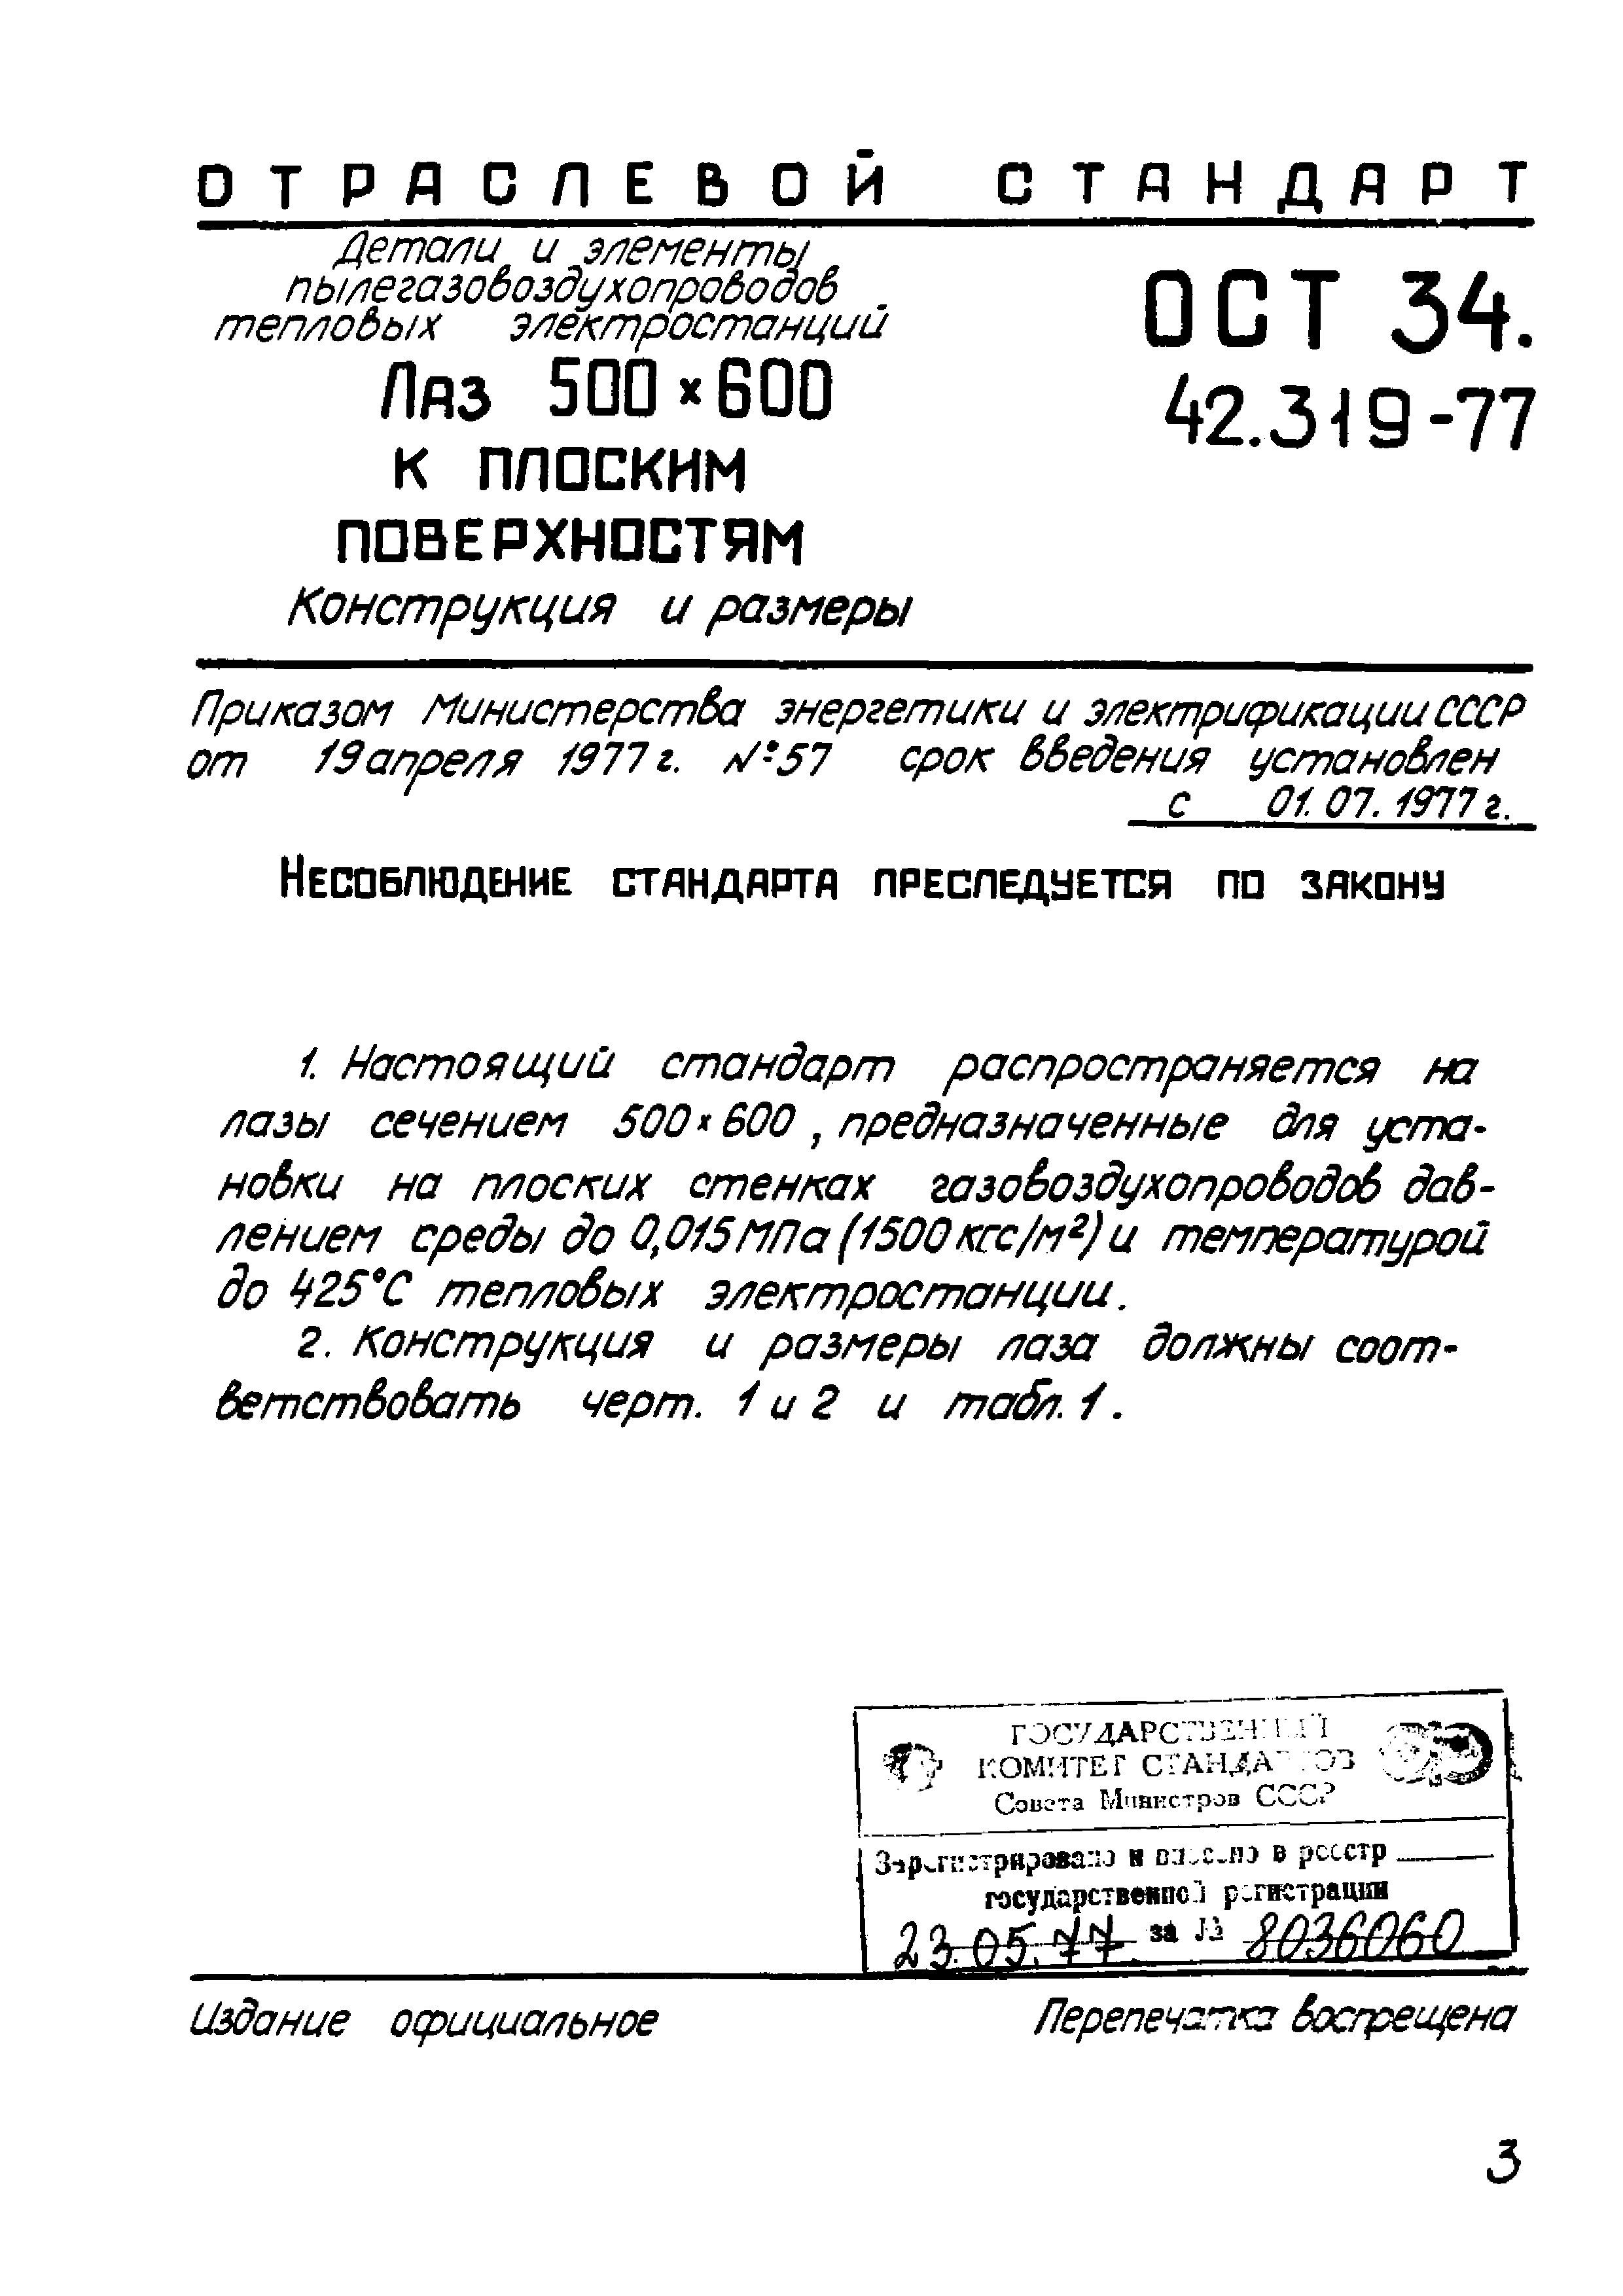 ОСТ 34.42.319-77